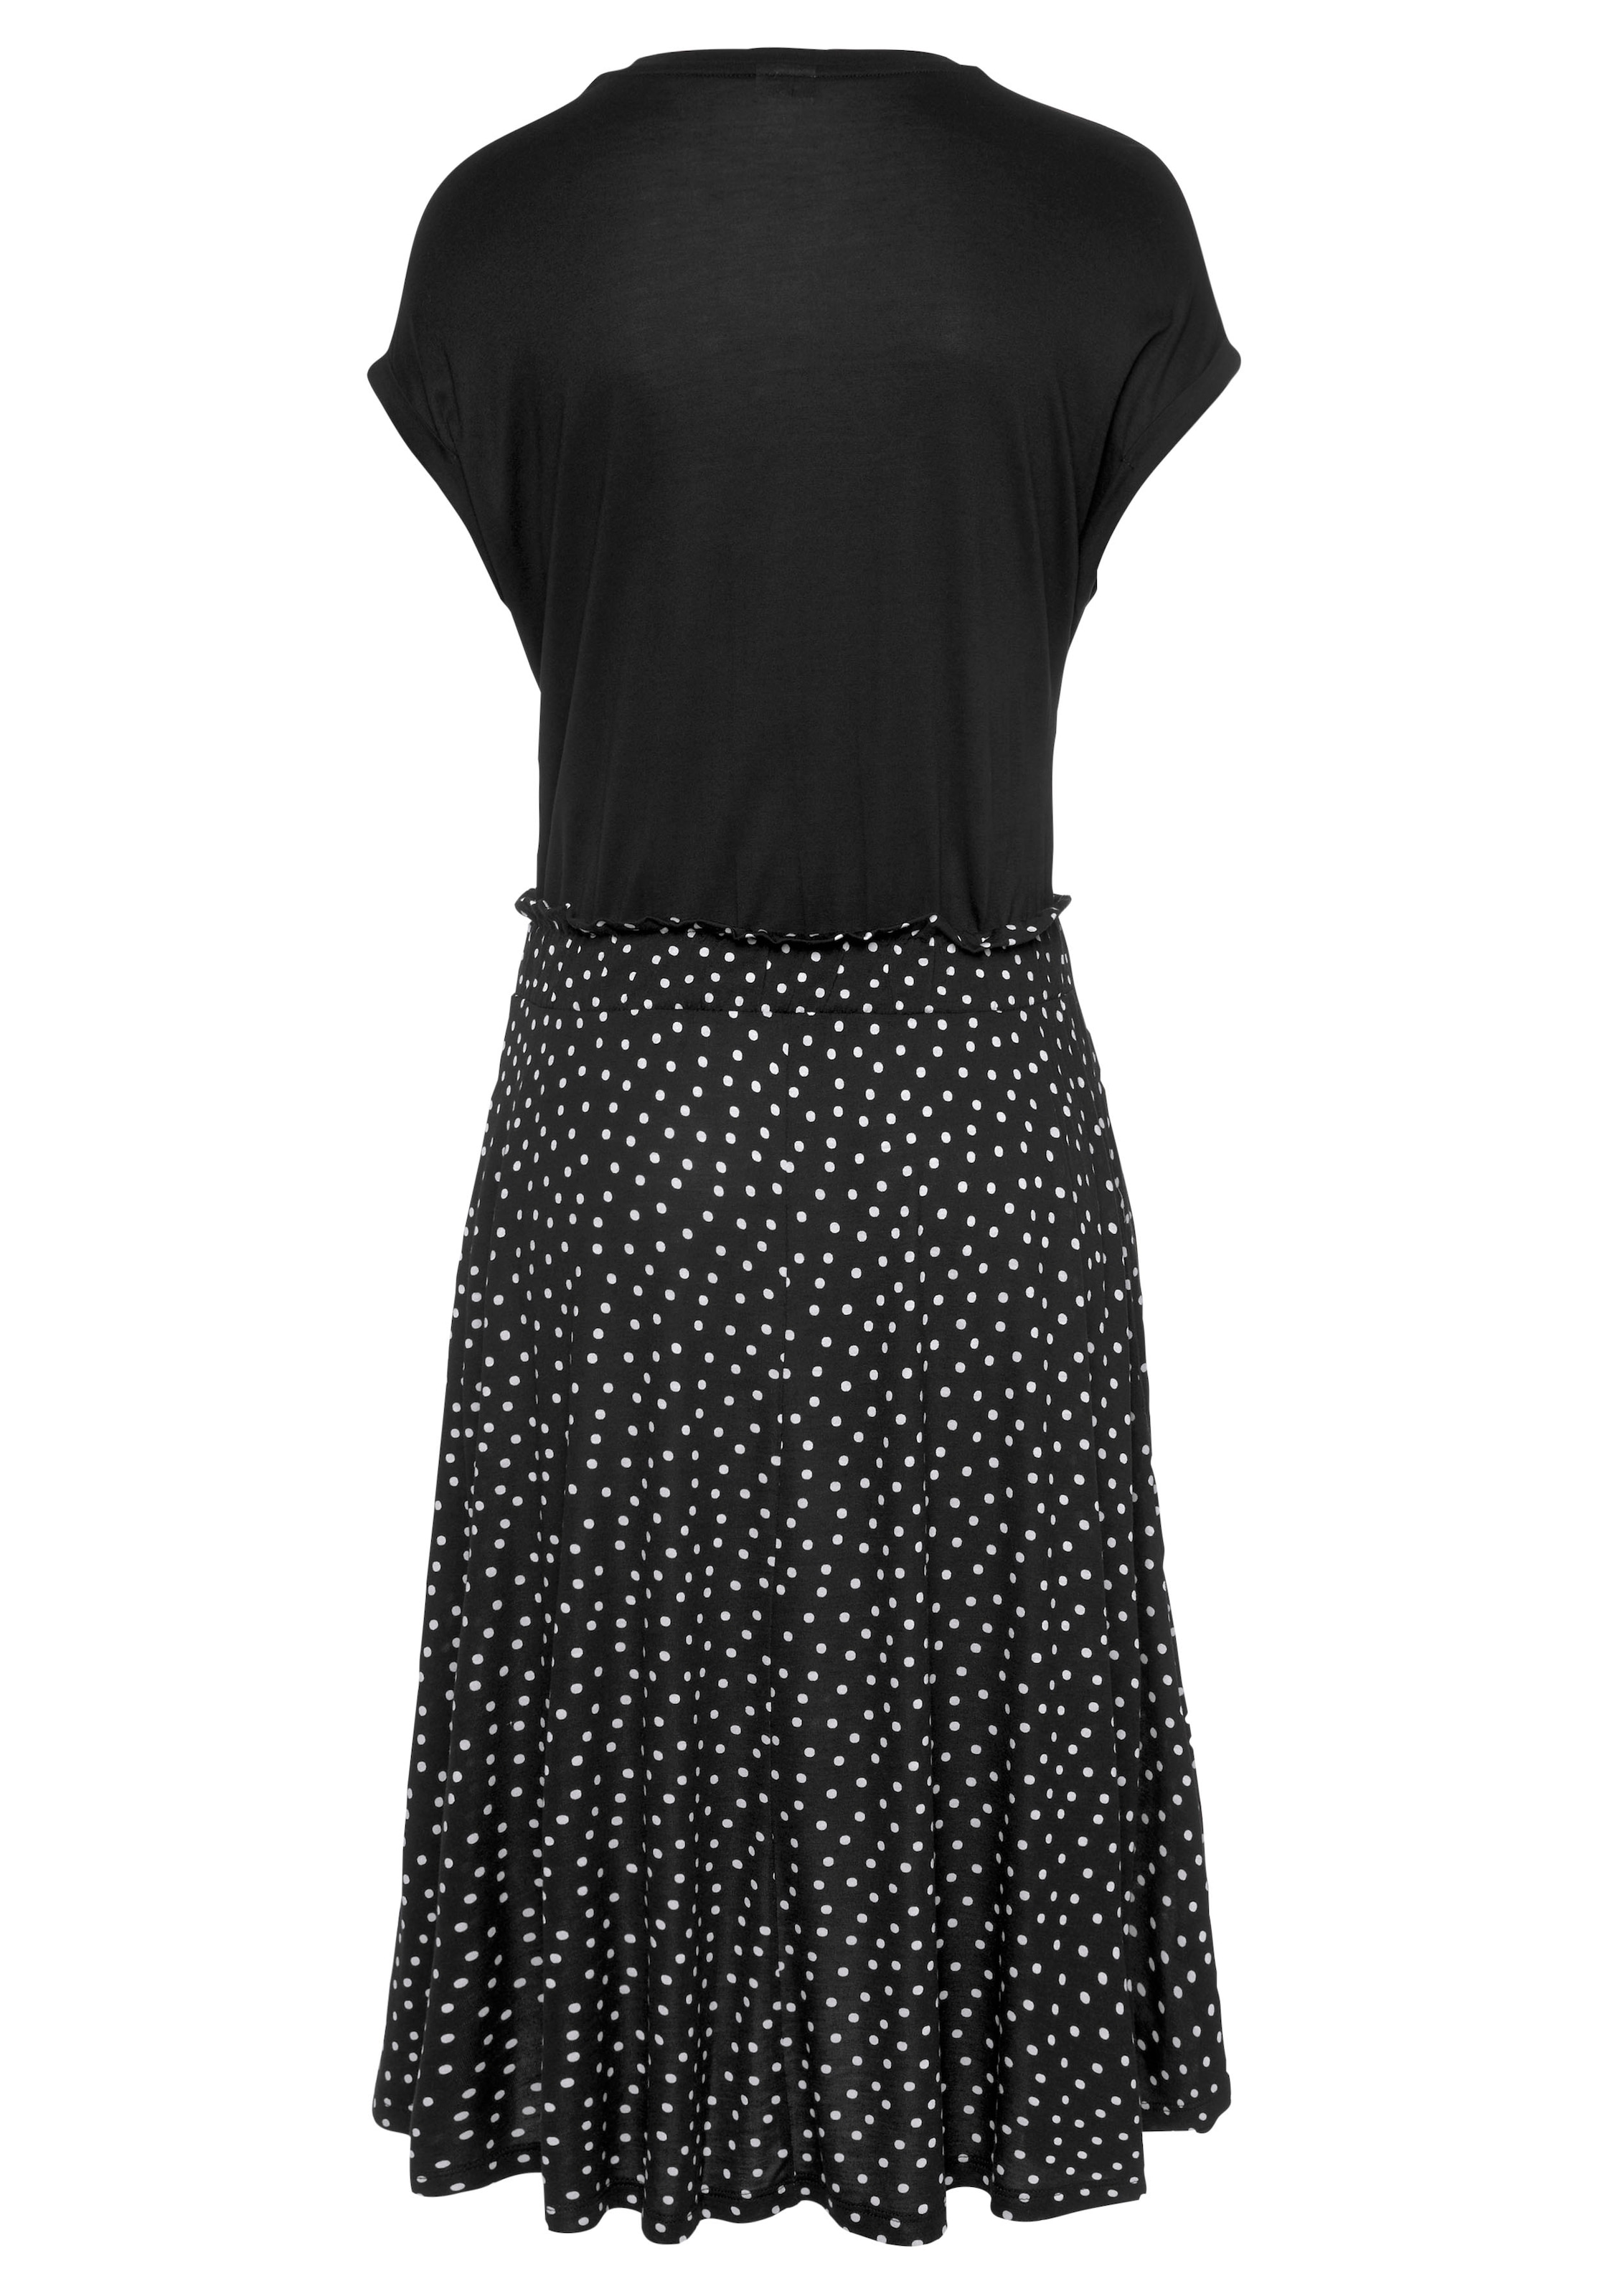 Beachtime Jerseykleid, mit Paperbag-Bund und Taschen, Druckkleid,  sommerlich, elegant online bei OTTO